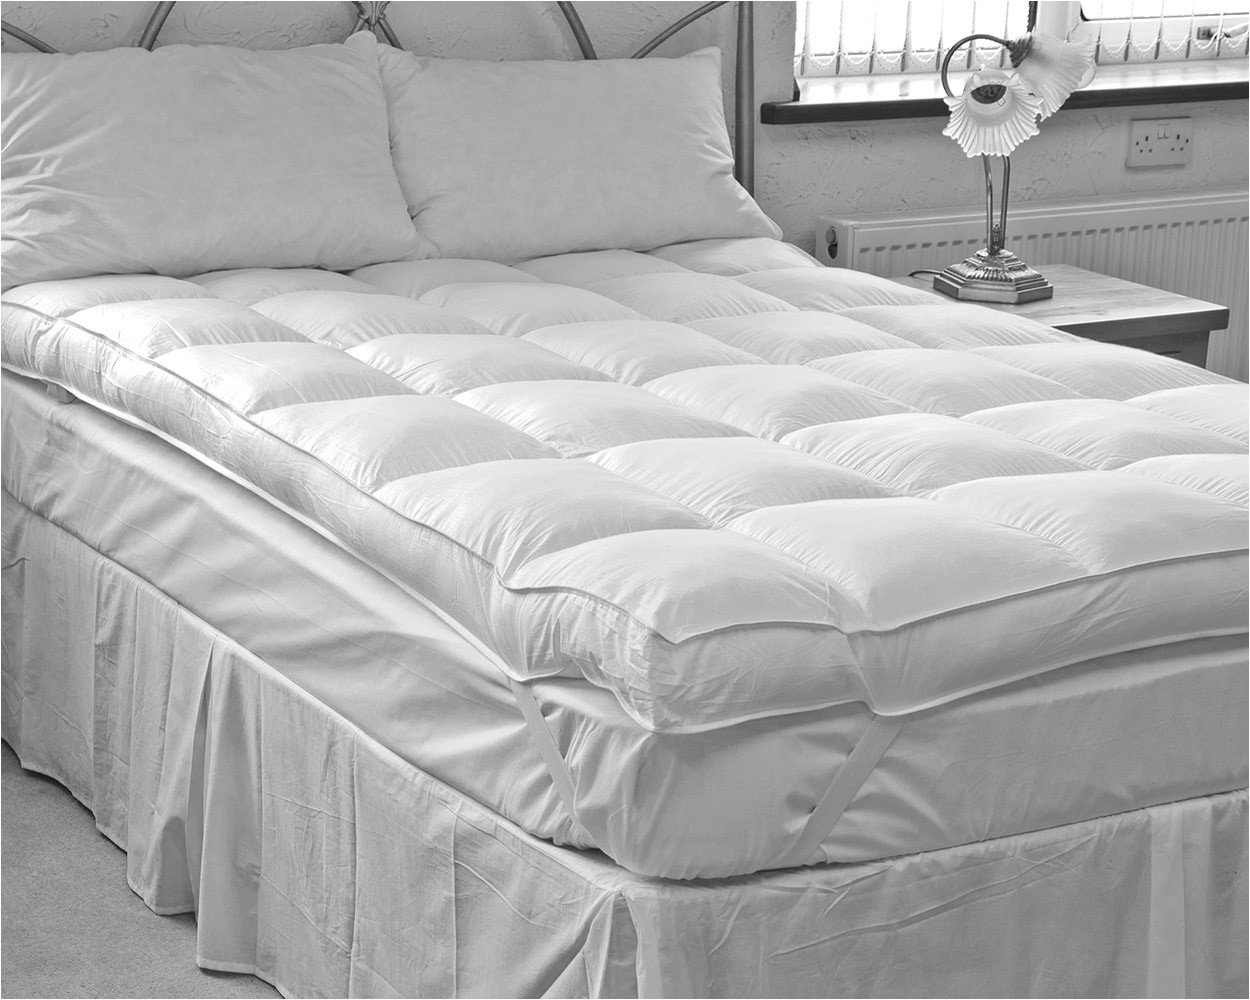 ezysleep 4 inch thick super soft mattress topper